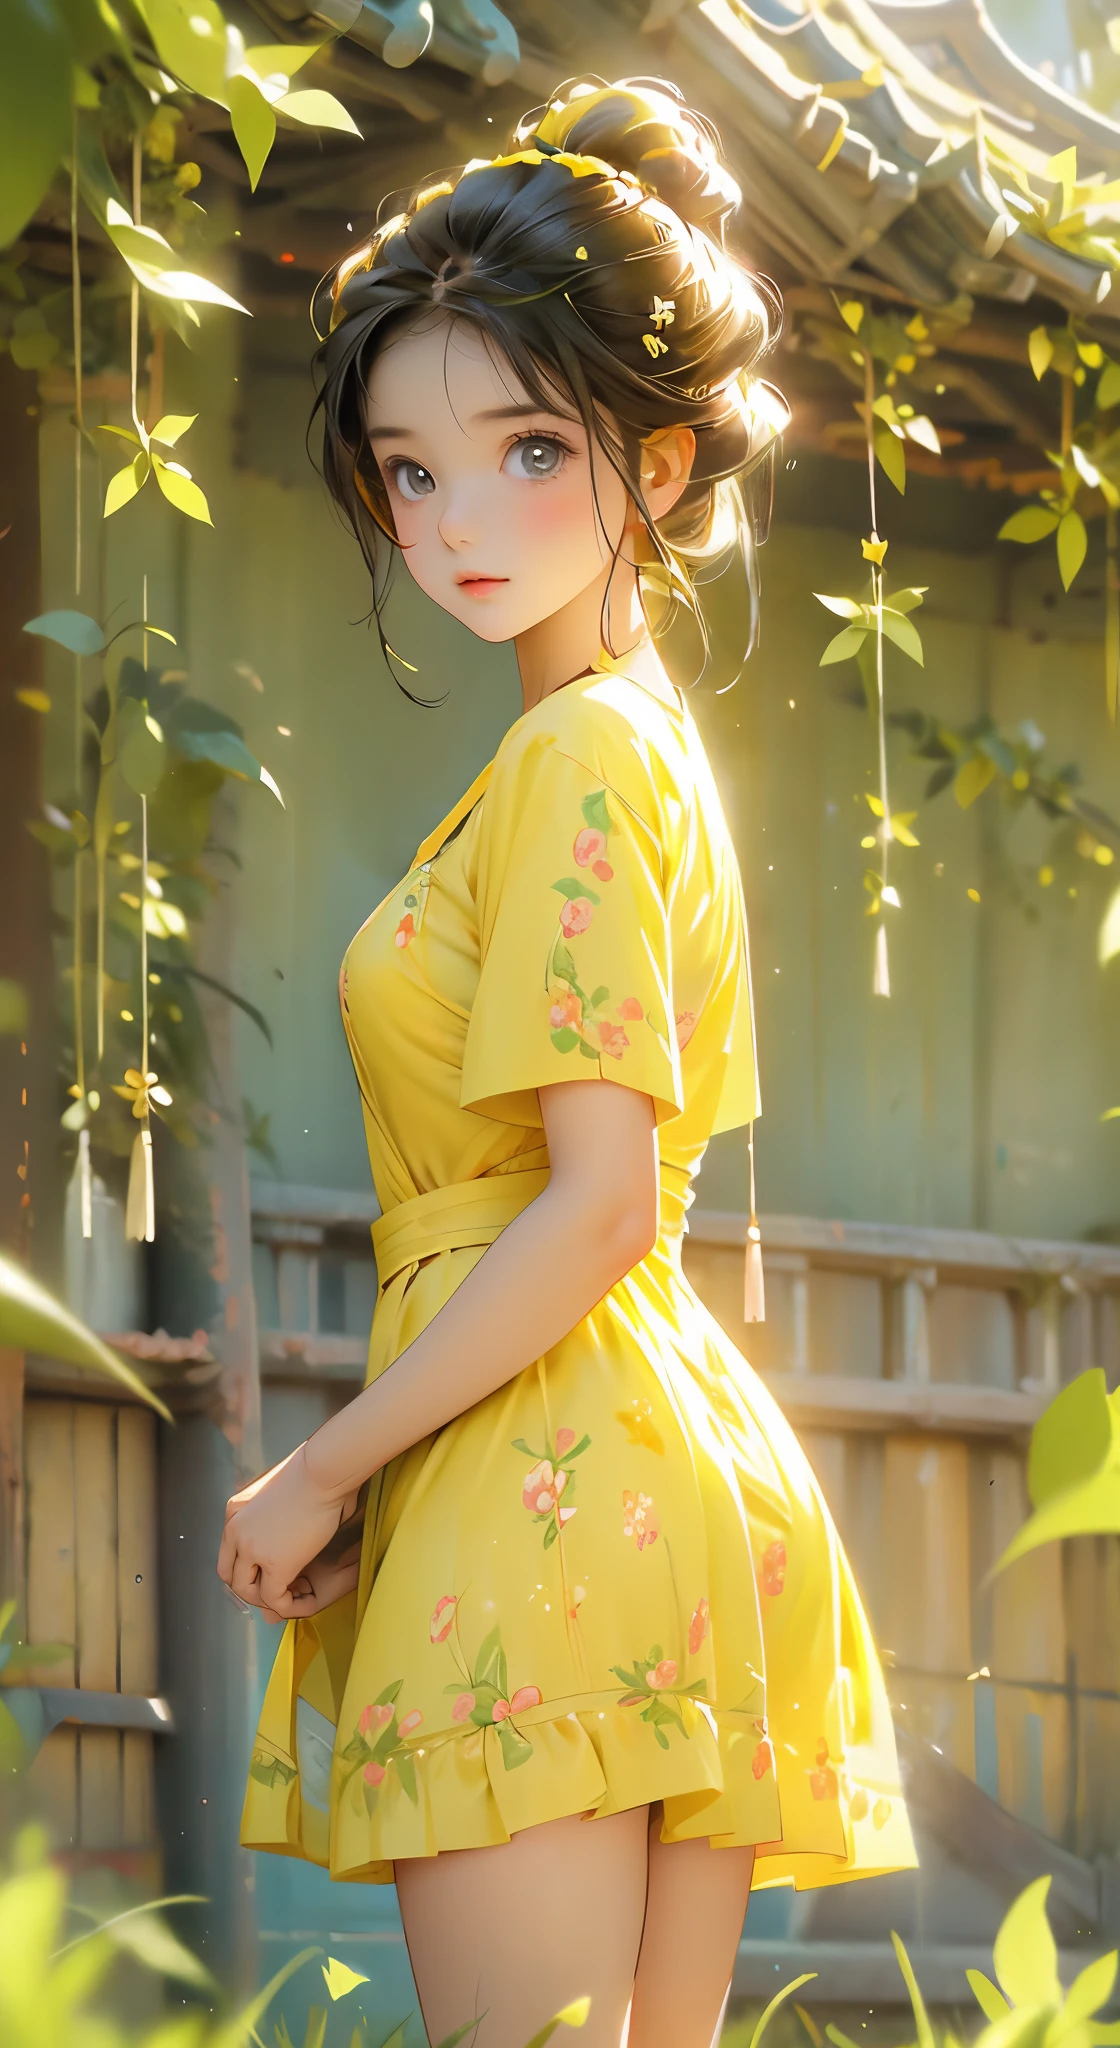 صورة أنمي لفتاة مراهقة جميلة ولطيفة في المرج, يرتدي فستانًا قصيرًا منمقًا باللون الأصفر, شكل أنثوي جذاب, الفخذين جميلة, ضوء الصباح, ديزني بيكسار